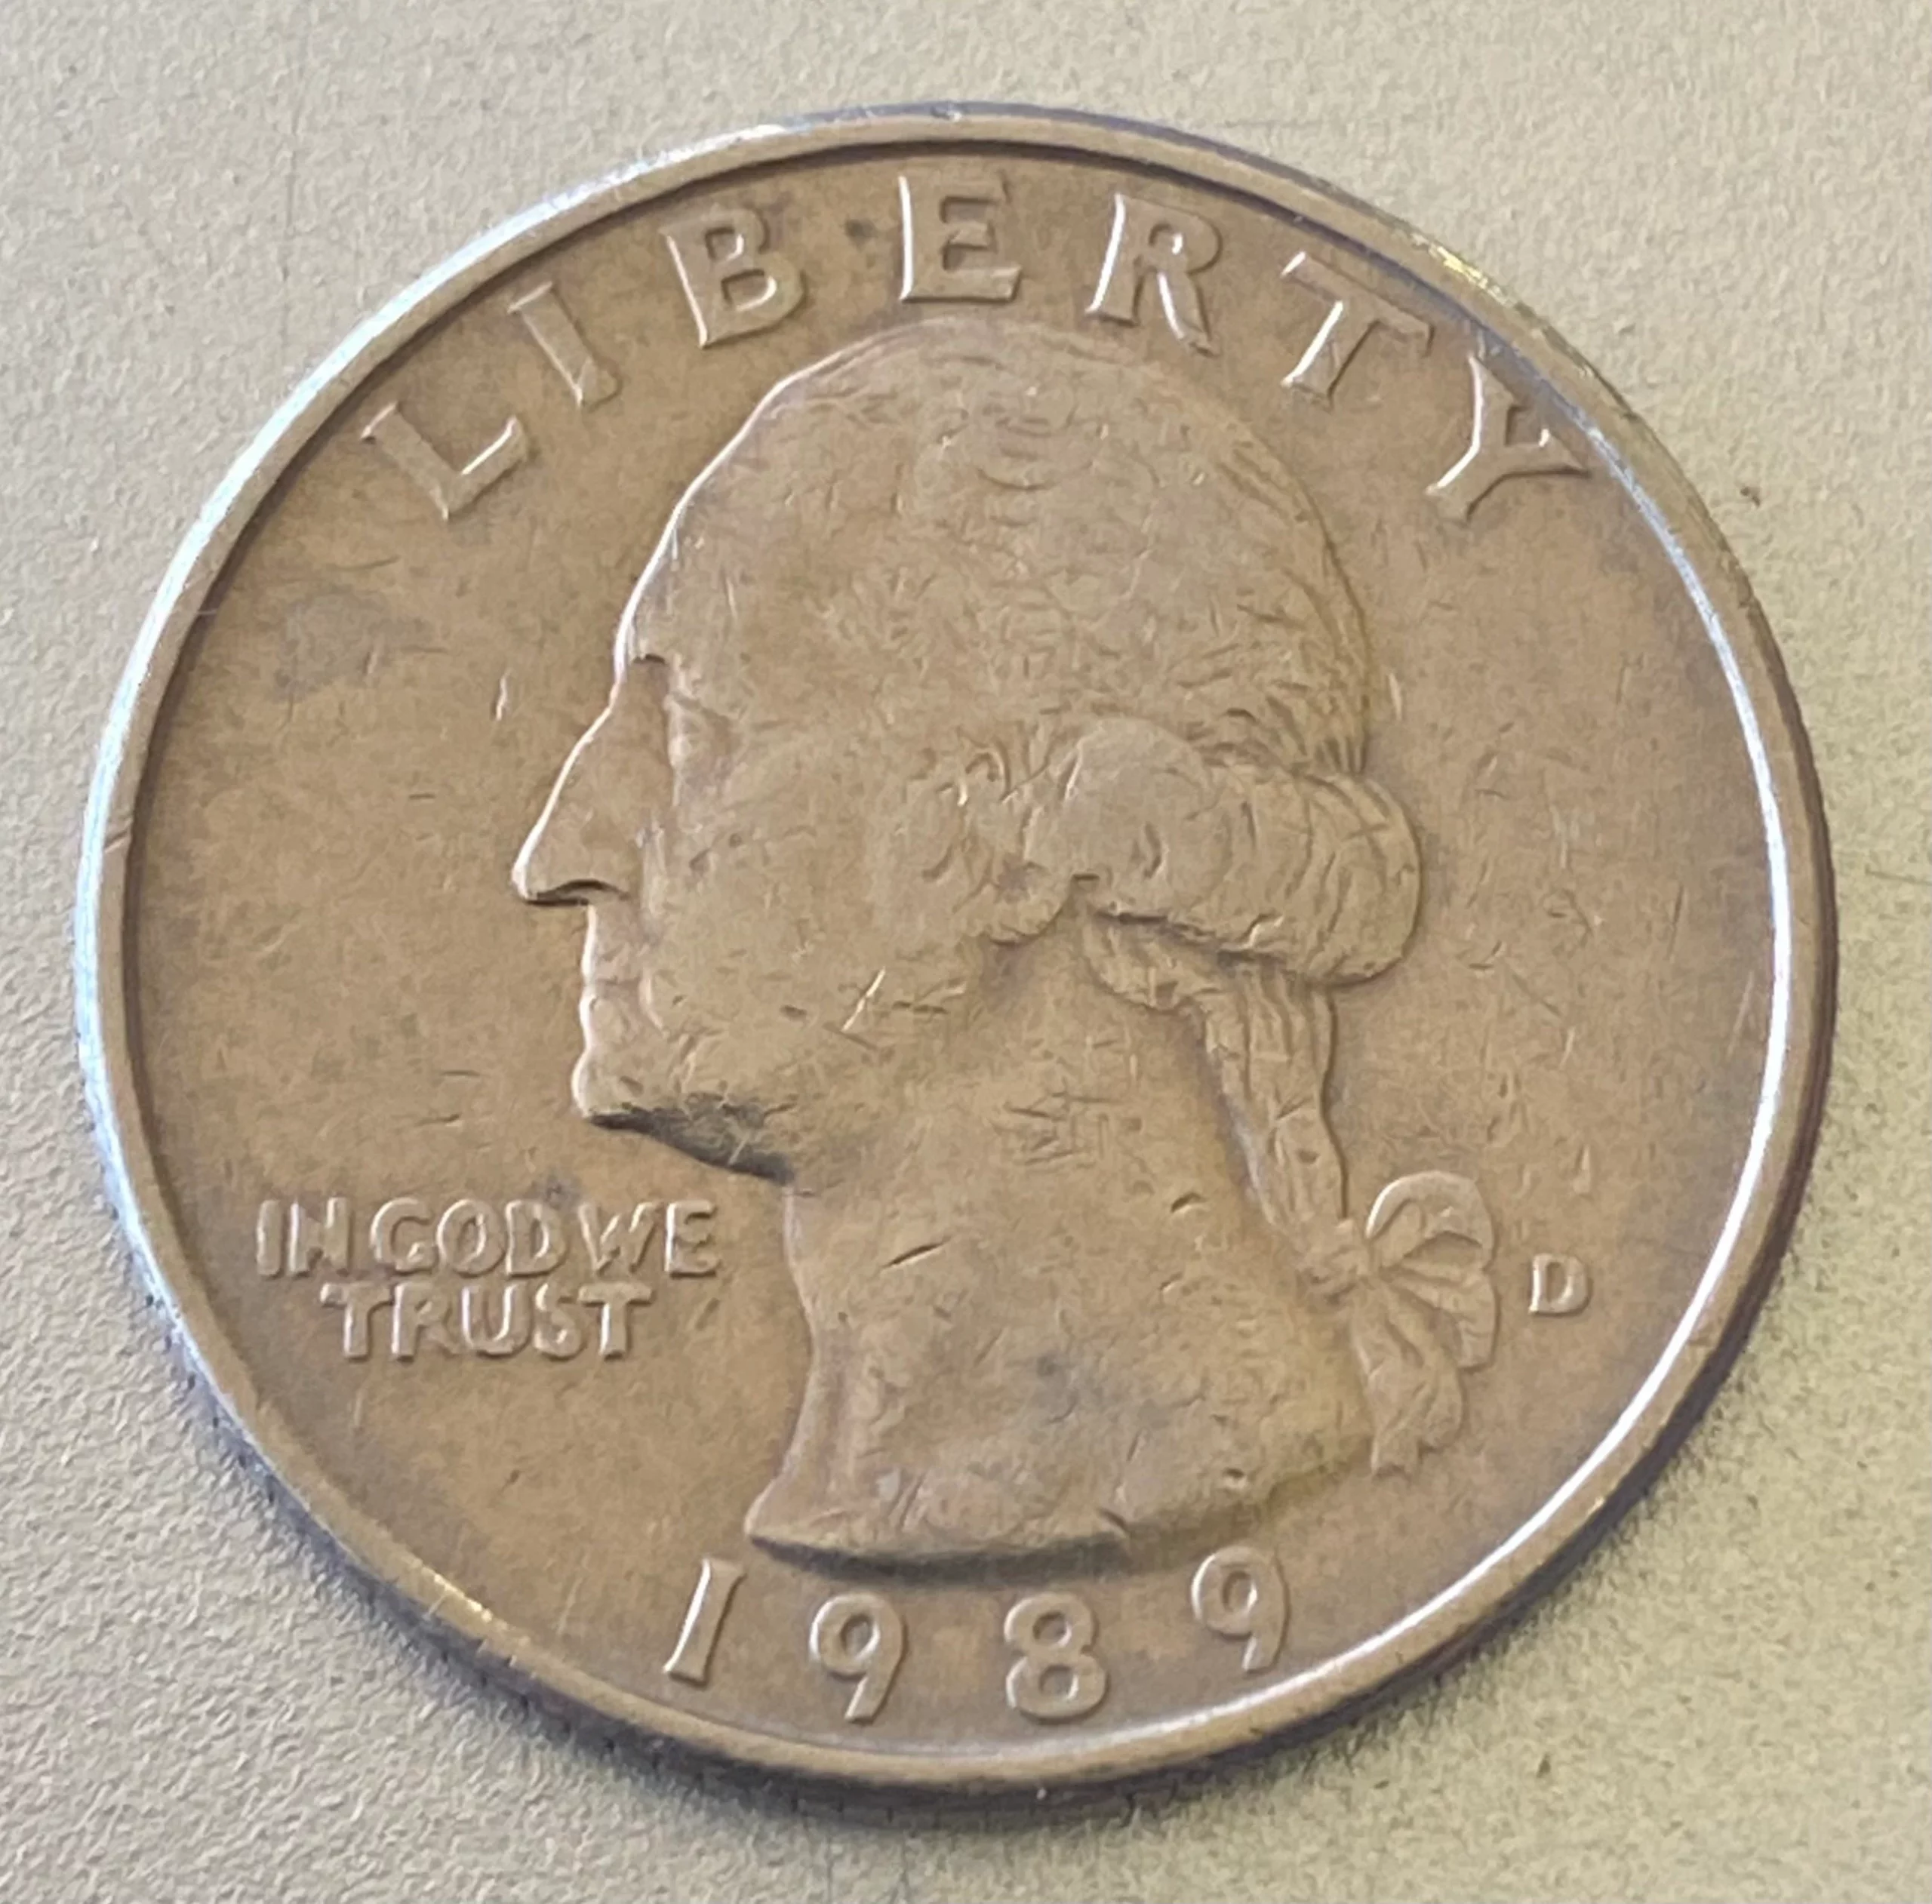 1989 Quarter Value